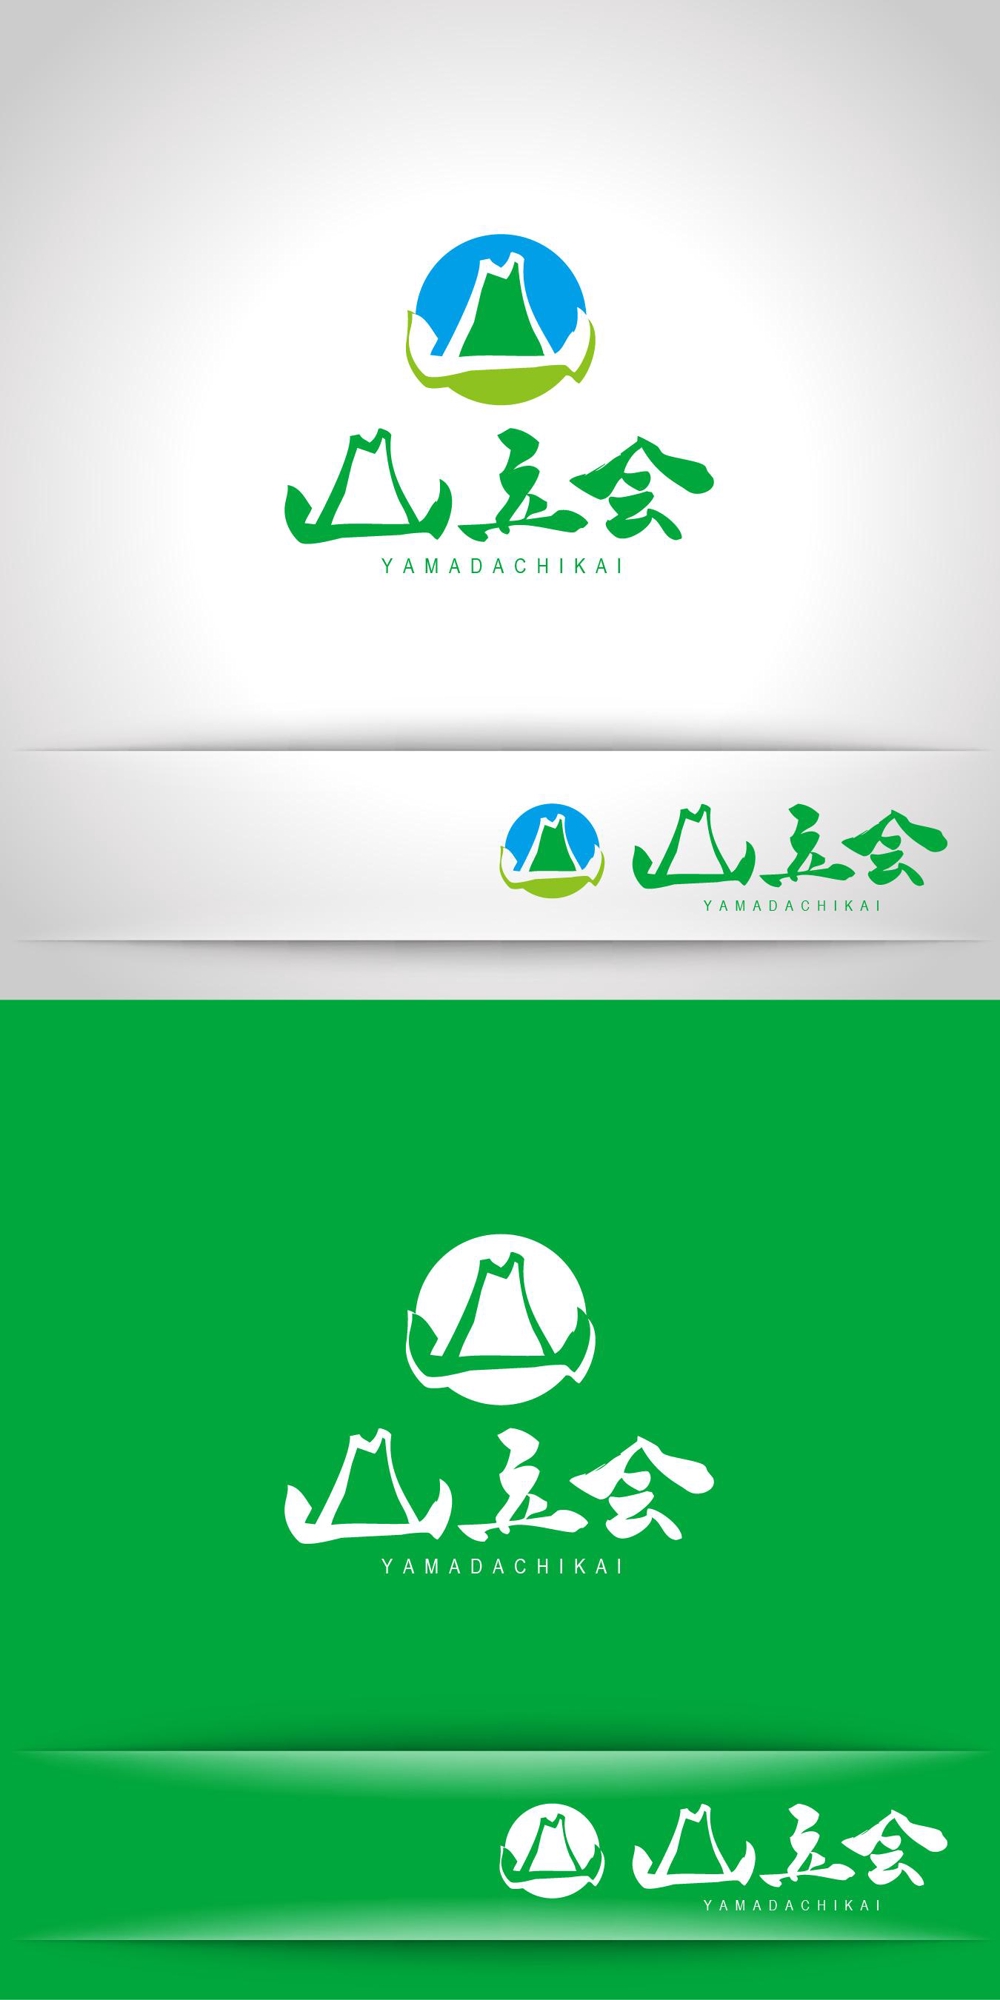 里山を元気にする会社「山立会（やまだちかい）」のロゴ